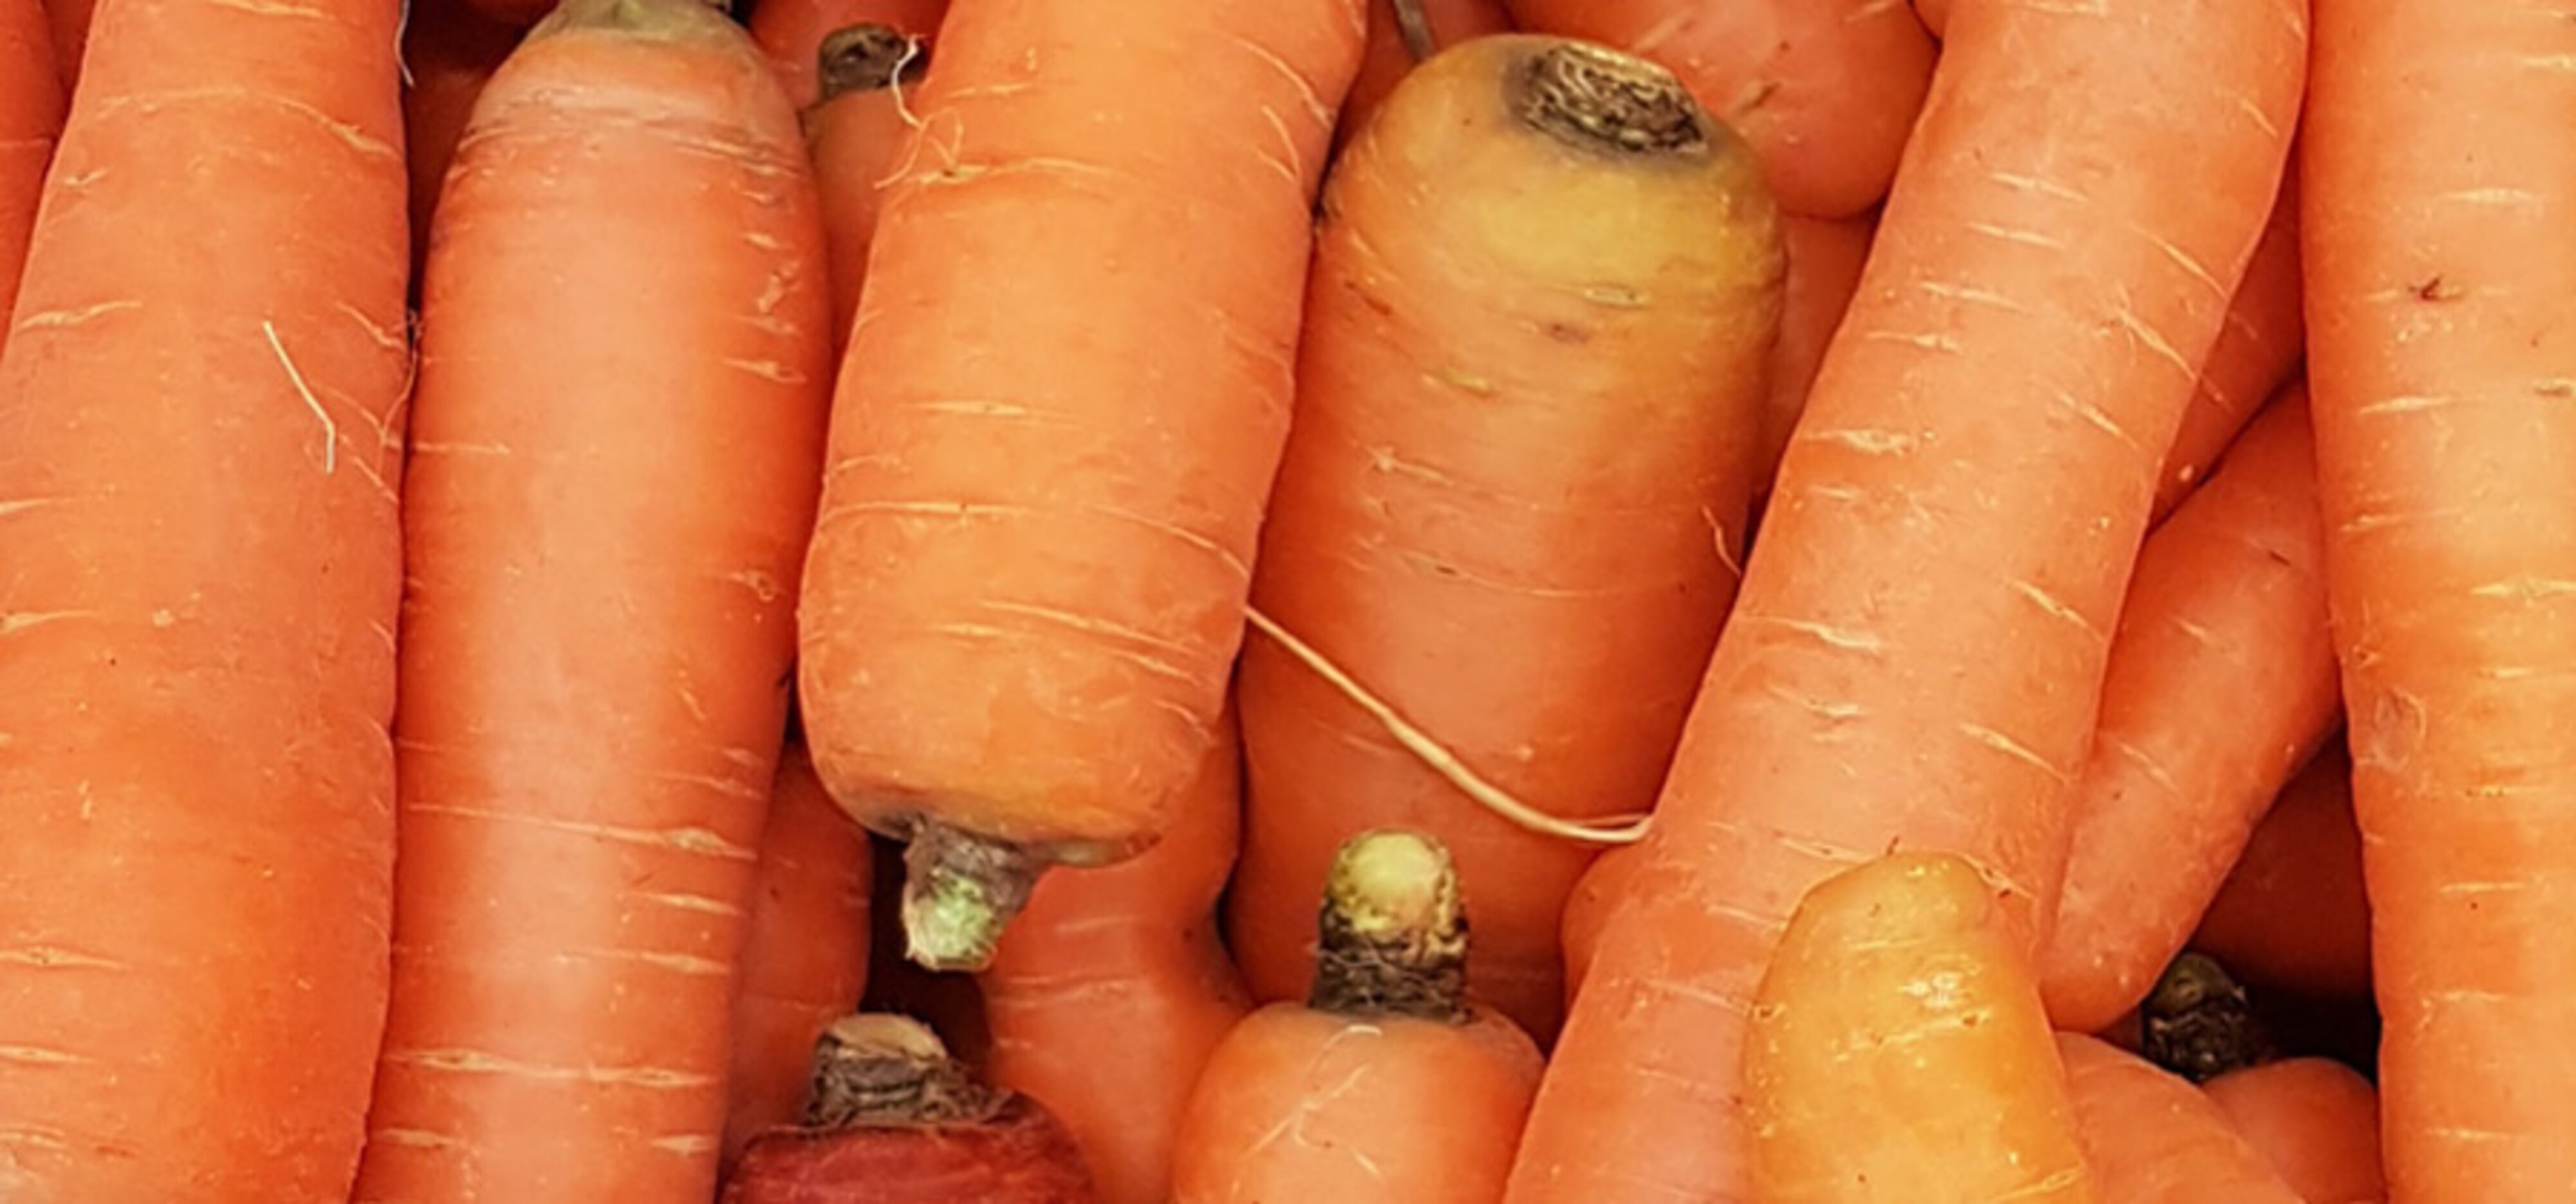 Gemüse-Lexikon: Karotten | Carl Kühne KG